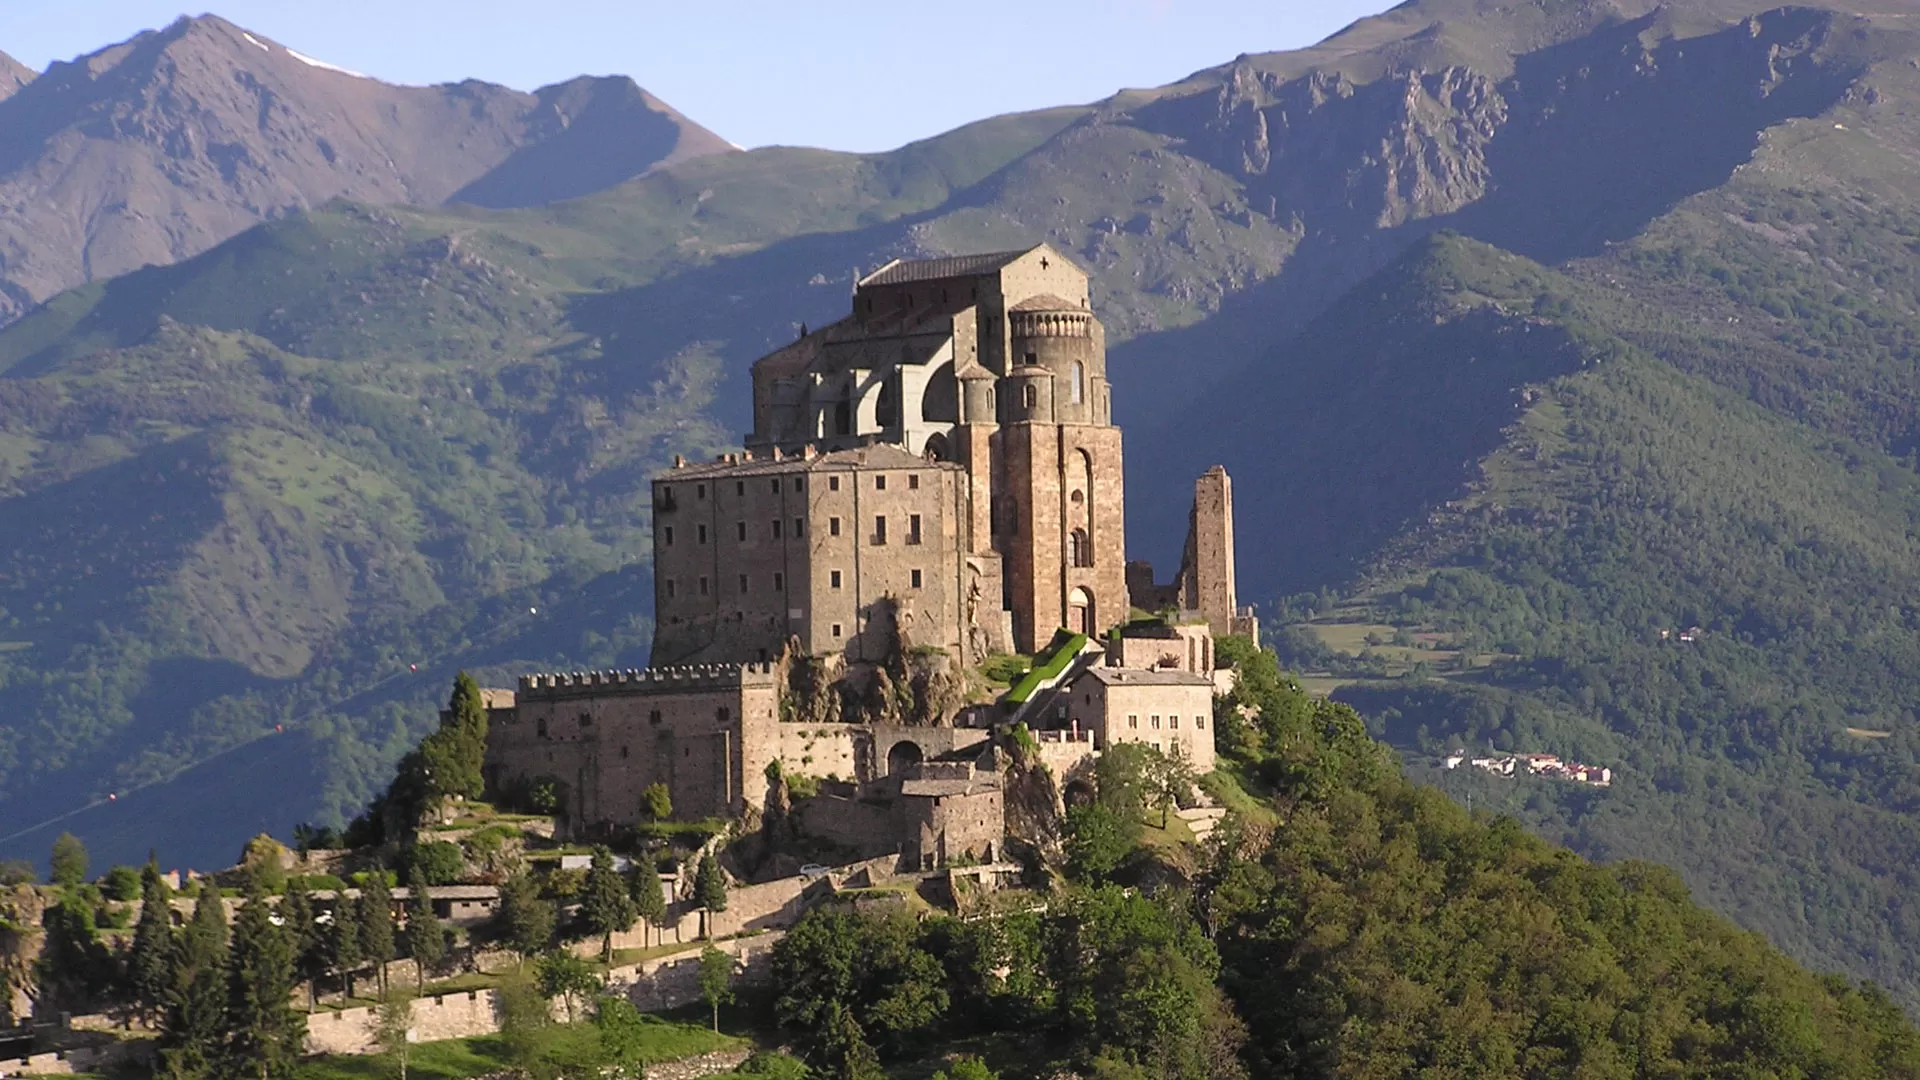 National Geographic incorona la Sacra di San Michele come uno dei luoghi mistici più suggestivi d'Europa